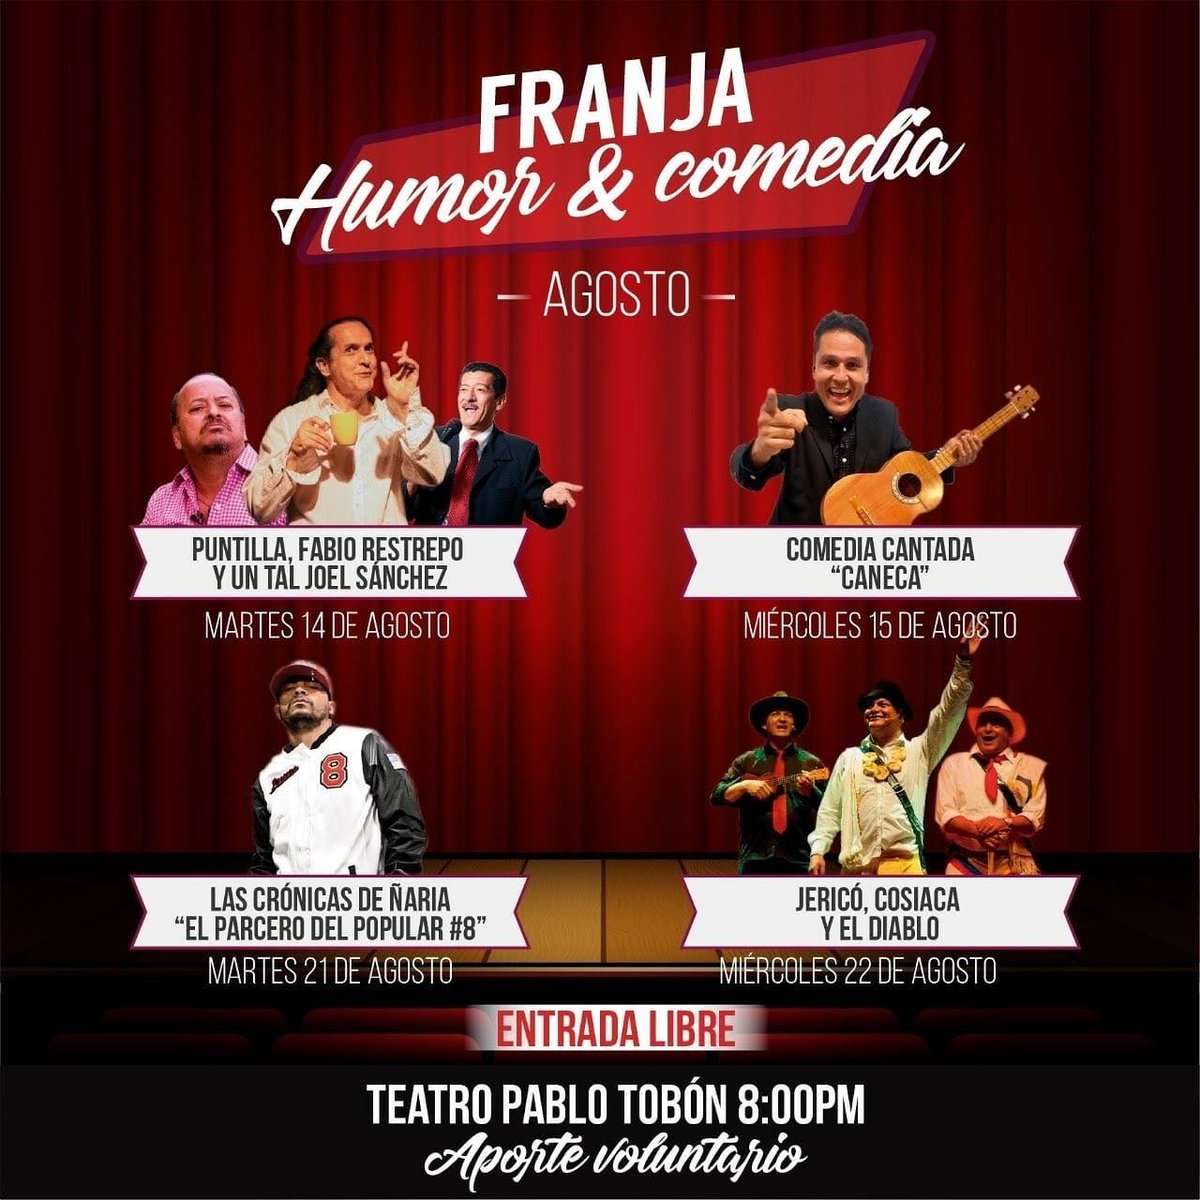 Franja Humor y Comedia en el Teatro Pablo Tobón en agosto